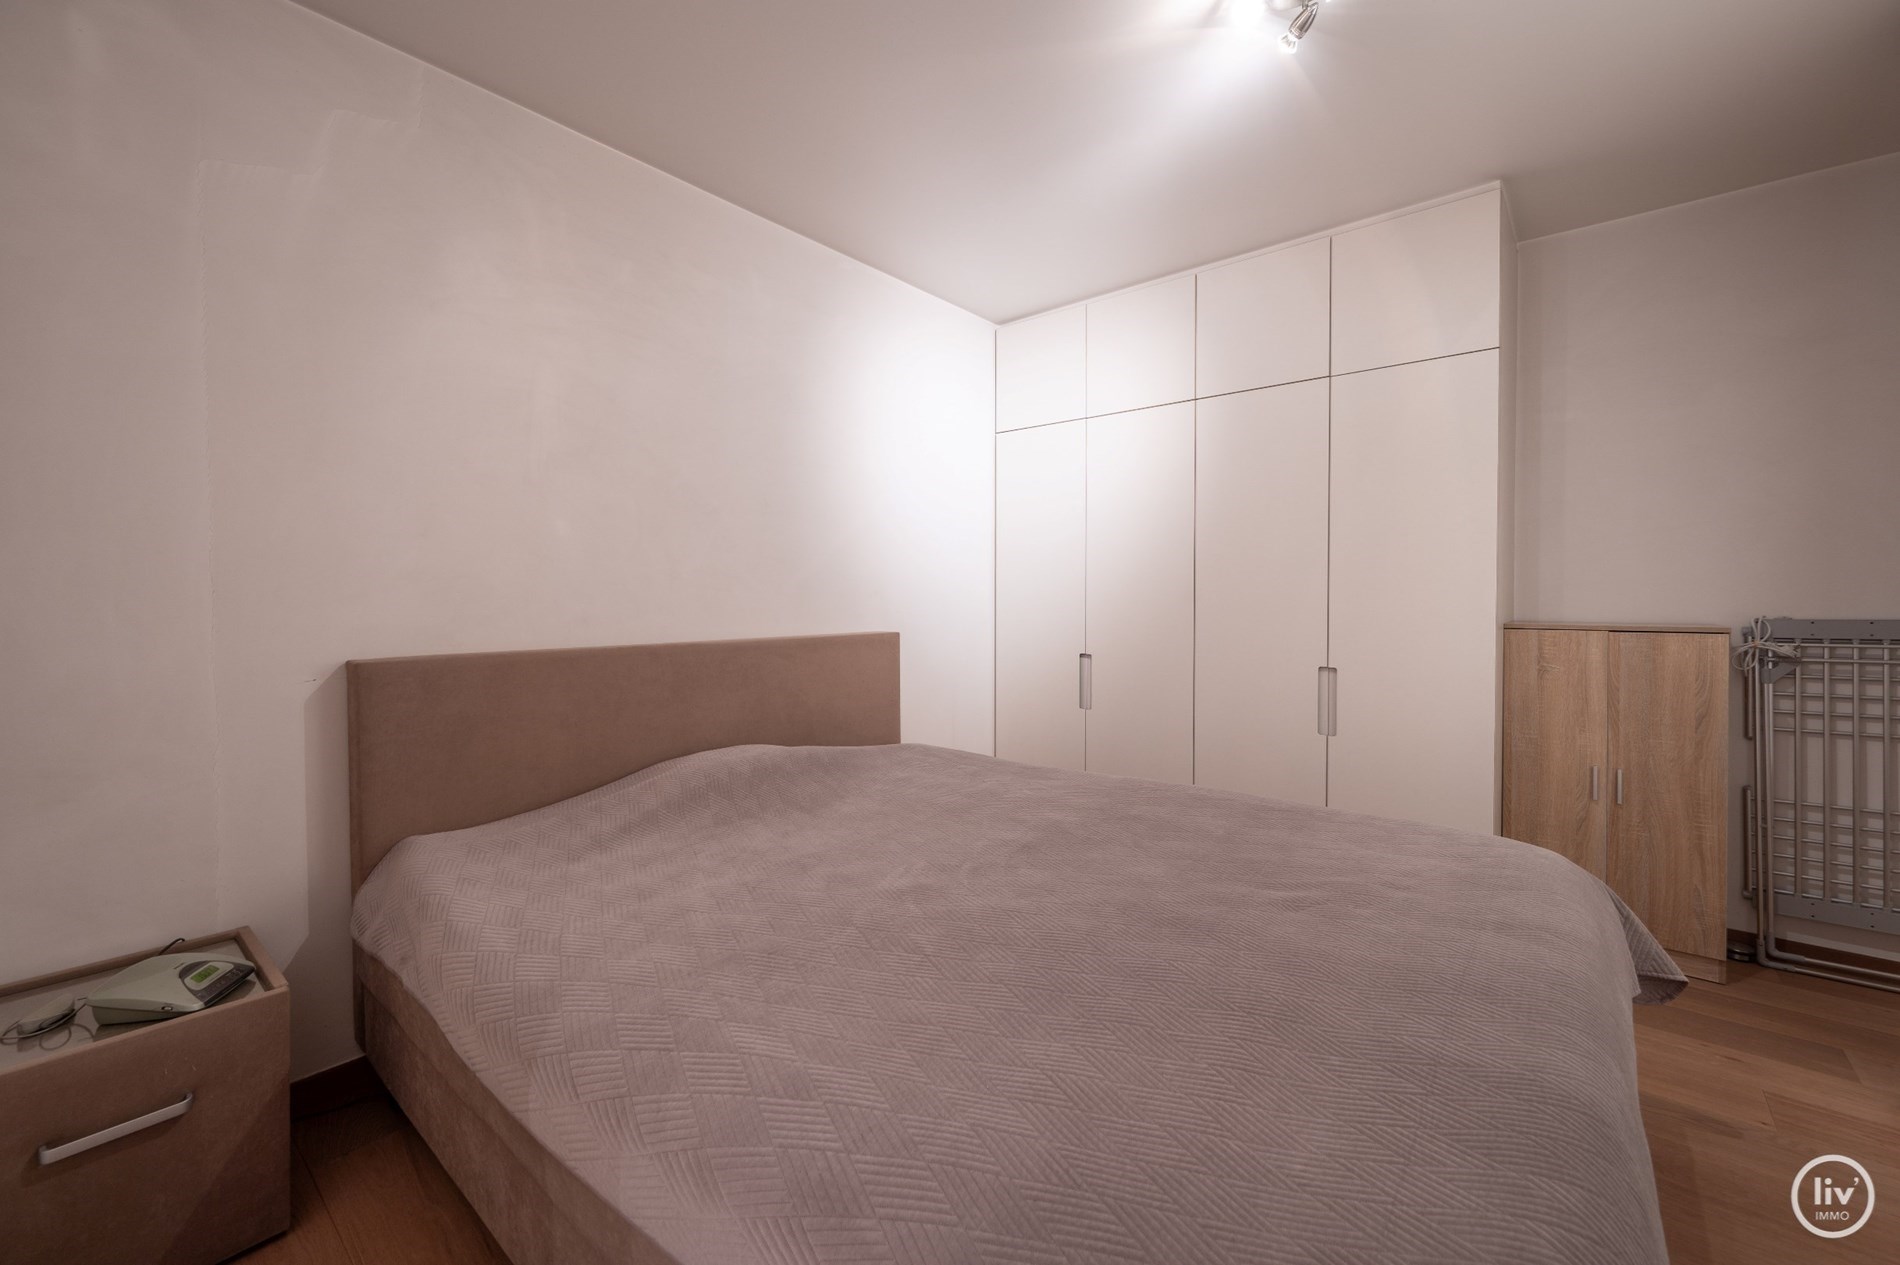 Ruim appartement met 3 slaapkamers centraal gelegen op de Parmentierlaan te knokke. 